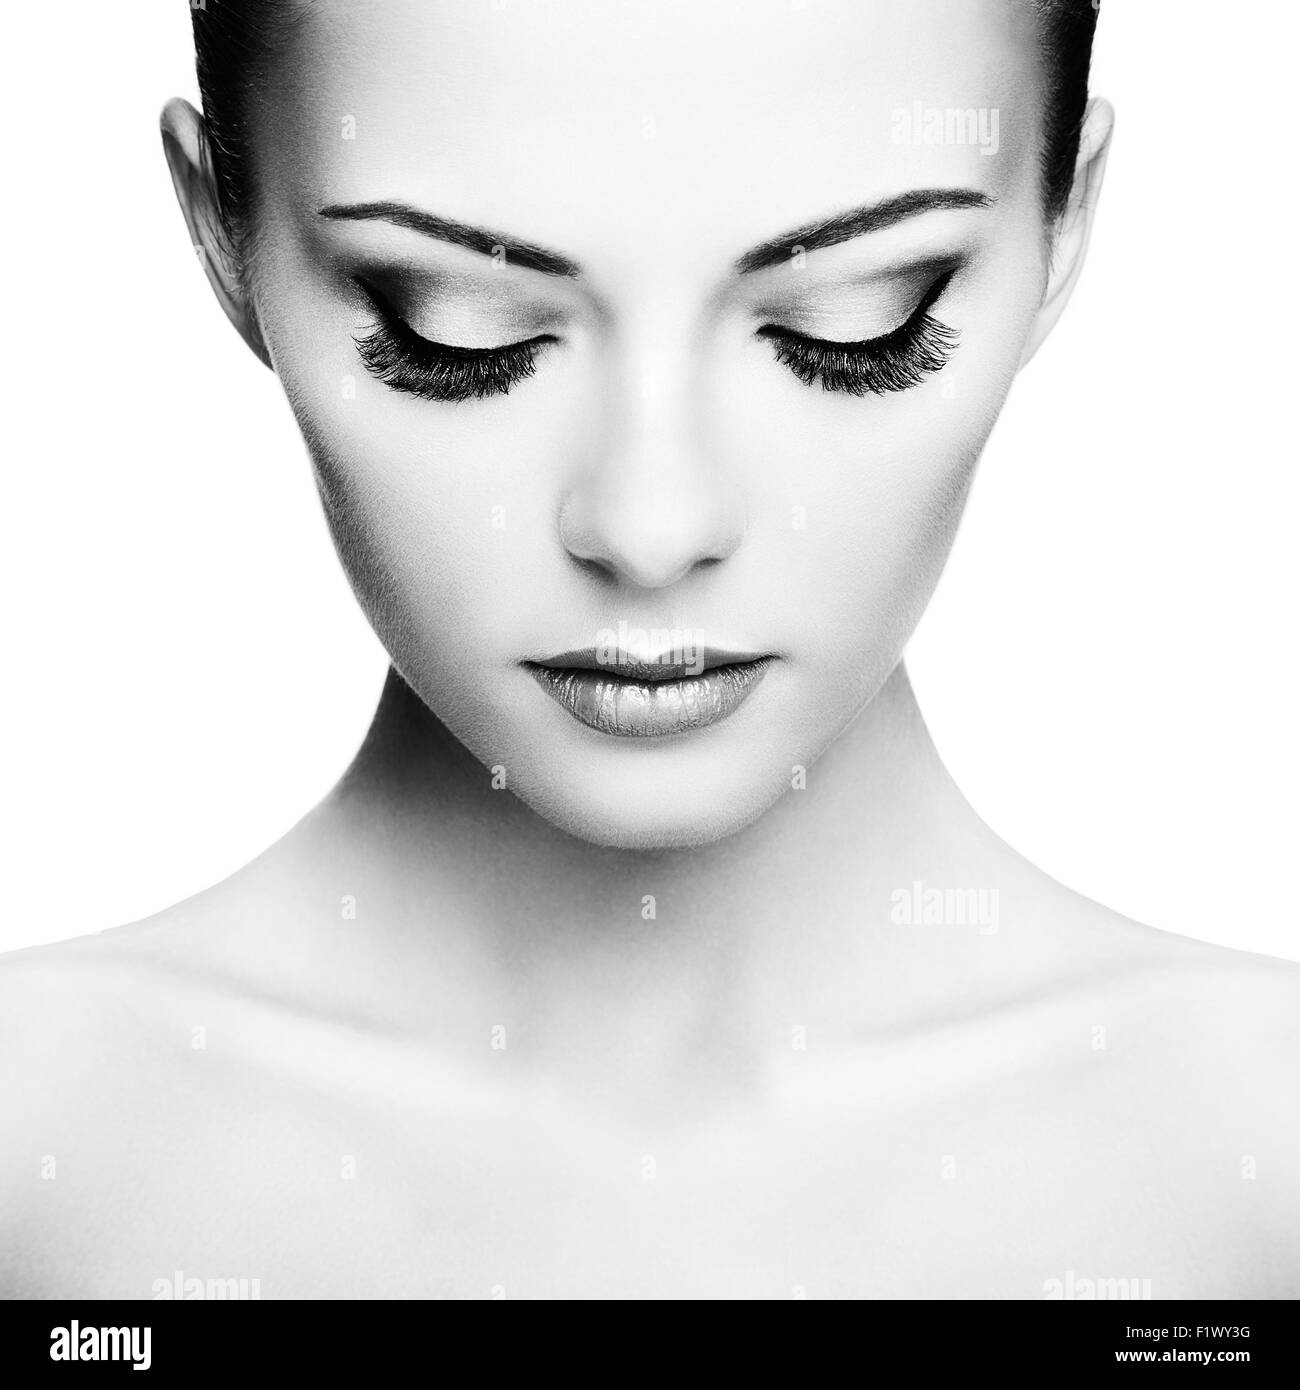 Woman heavy makeup white Banque d'images noir et blanc - Alamy